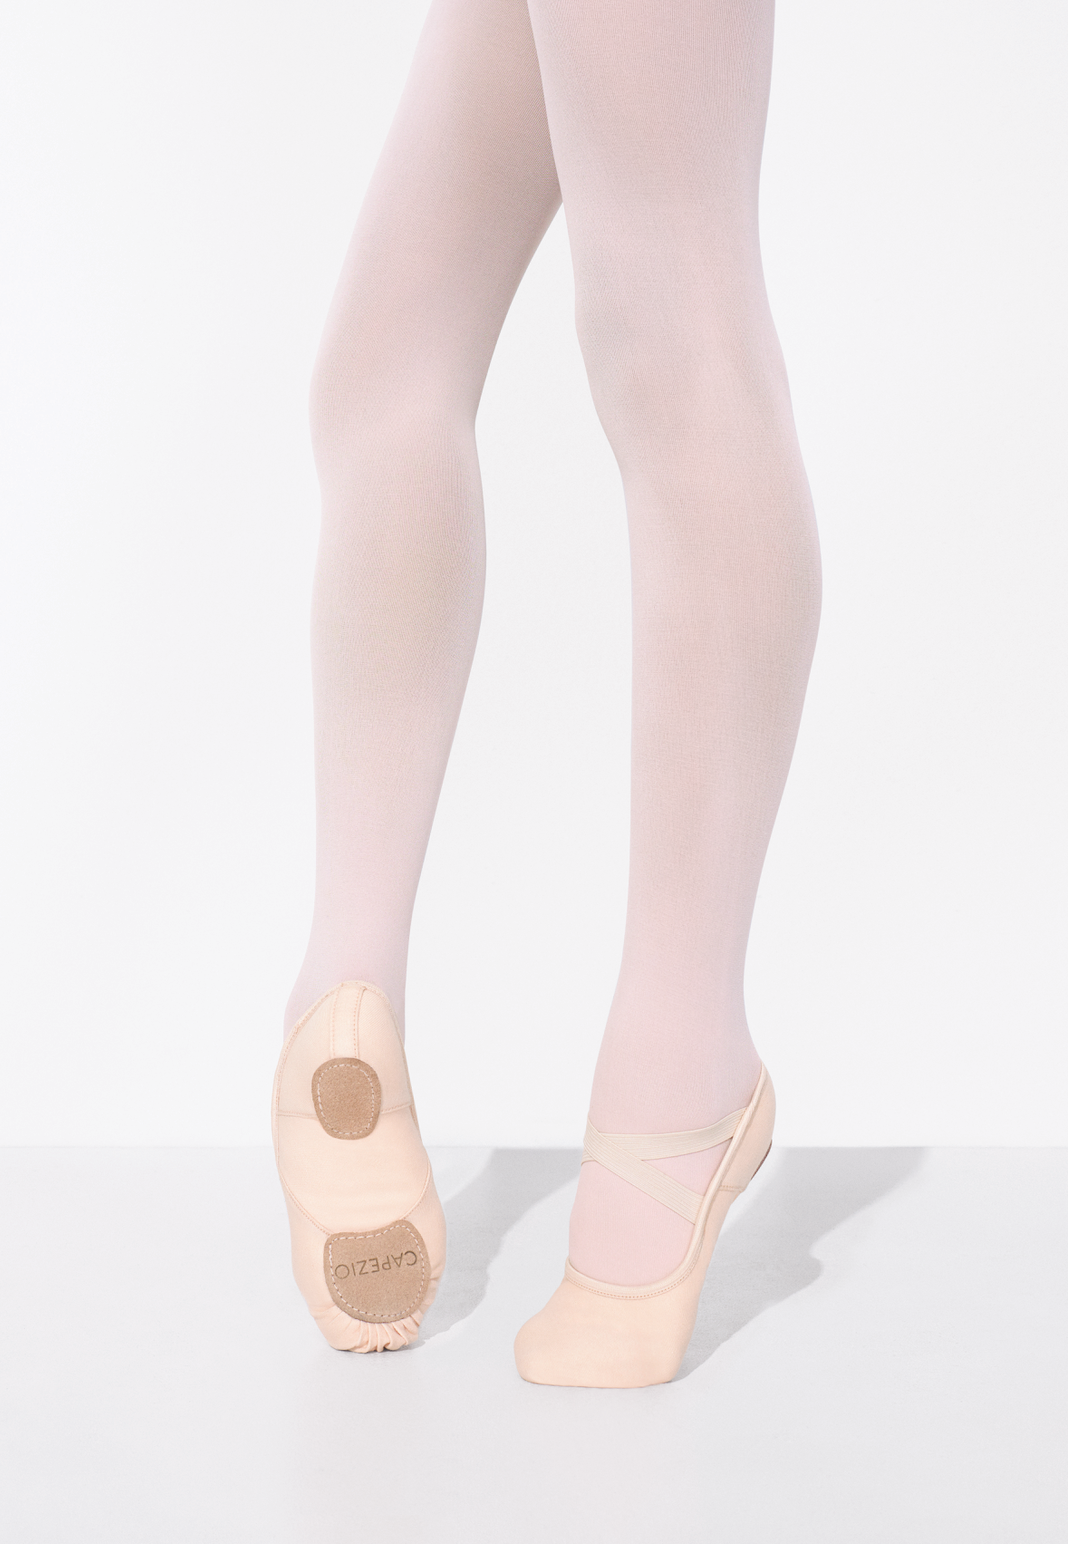 Capezio Hanami Ballet Shoe